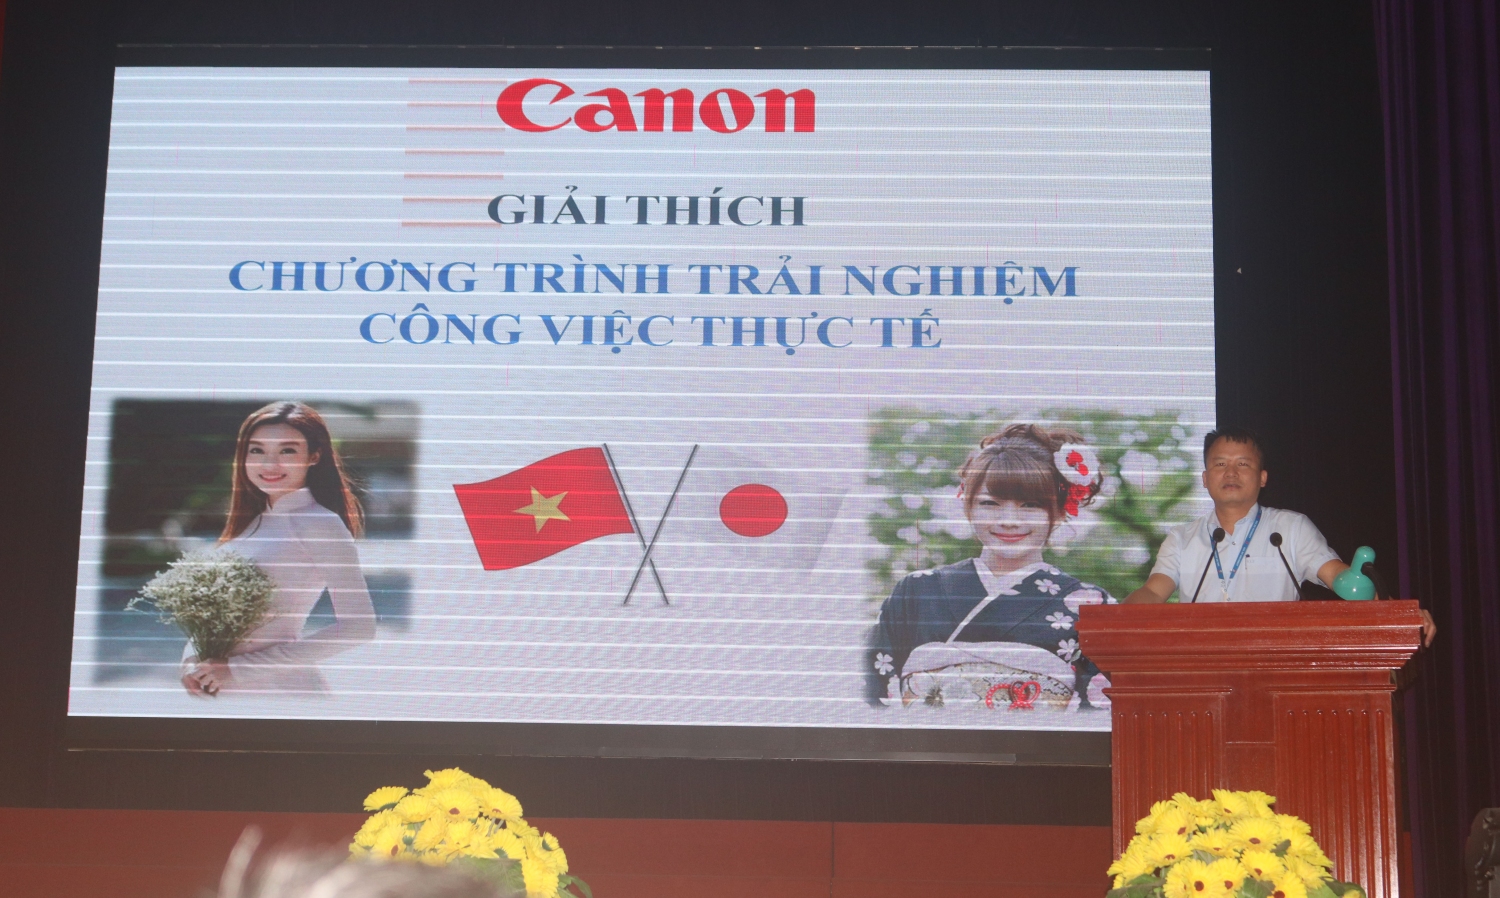 Sinh viên khoa Điện thực hiện chương trình thực tập tại Công ty Canon Việt Nam